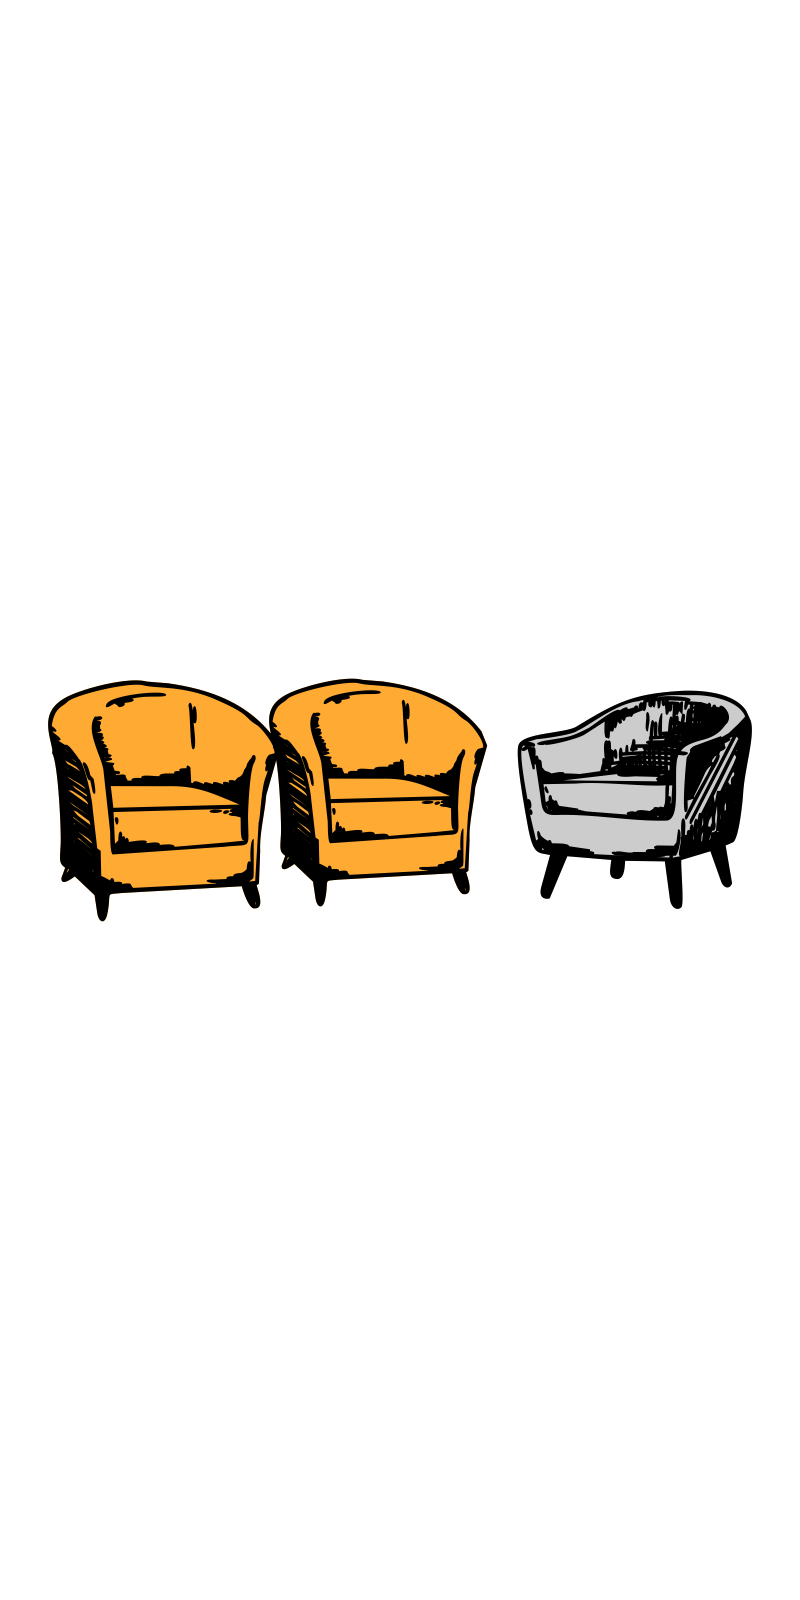 Dwa pomarańczowe fotele obok jednego szarego.